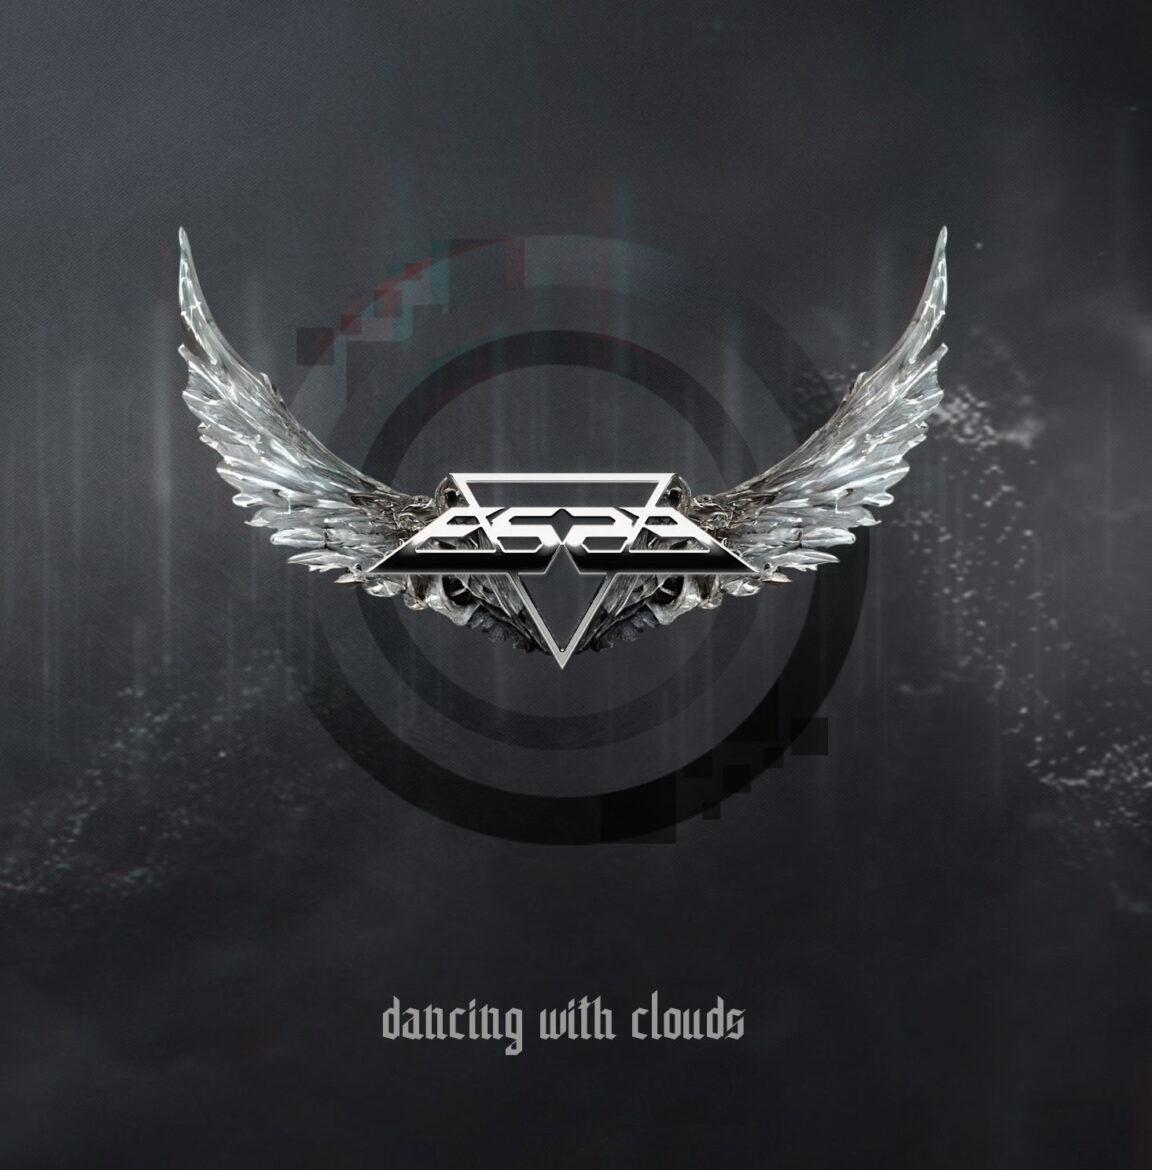 Cover zum ES23 Album "Dancing With Clouds". Es zeigt das metallisch glänzende Bandloge mit Engelsflügeln vor dunklem Hintergrund